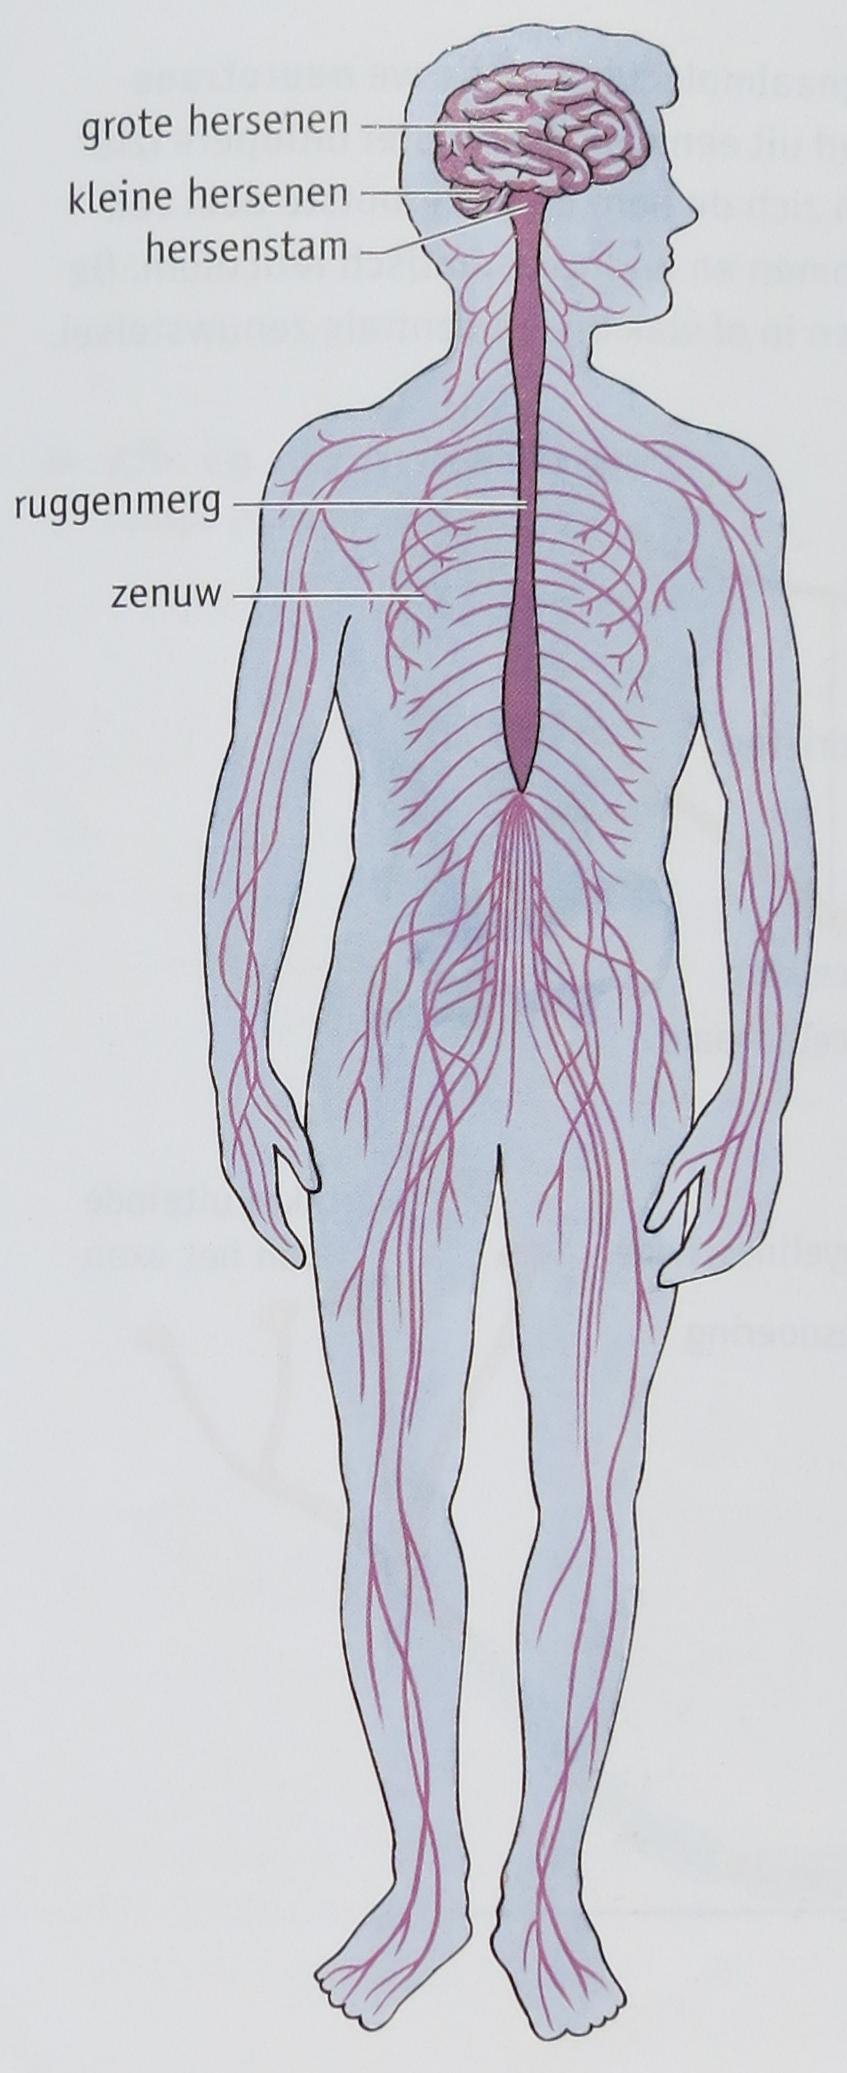 Basisstof 3 Het zenuwstelsel Als het zenuwstelsel ingedeeld wordt op basis van zijn bouw, dan bestaat het uit: a.